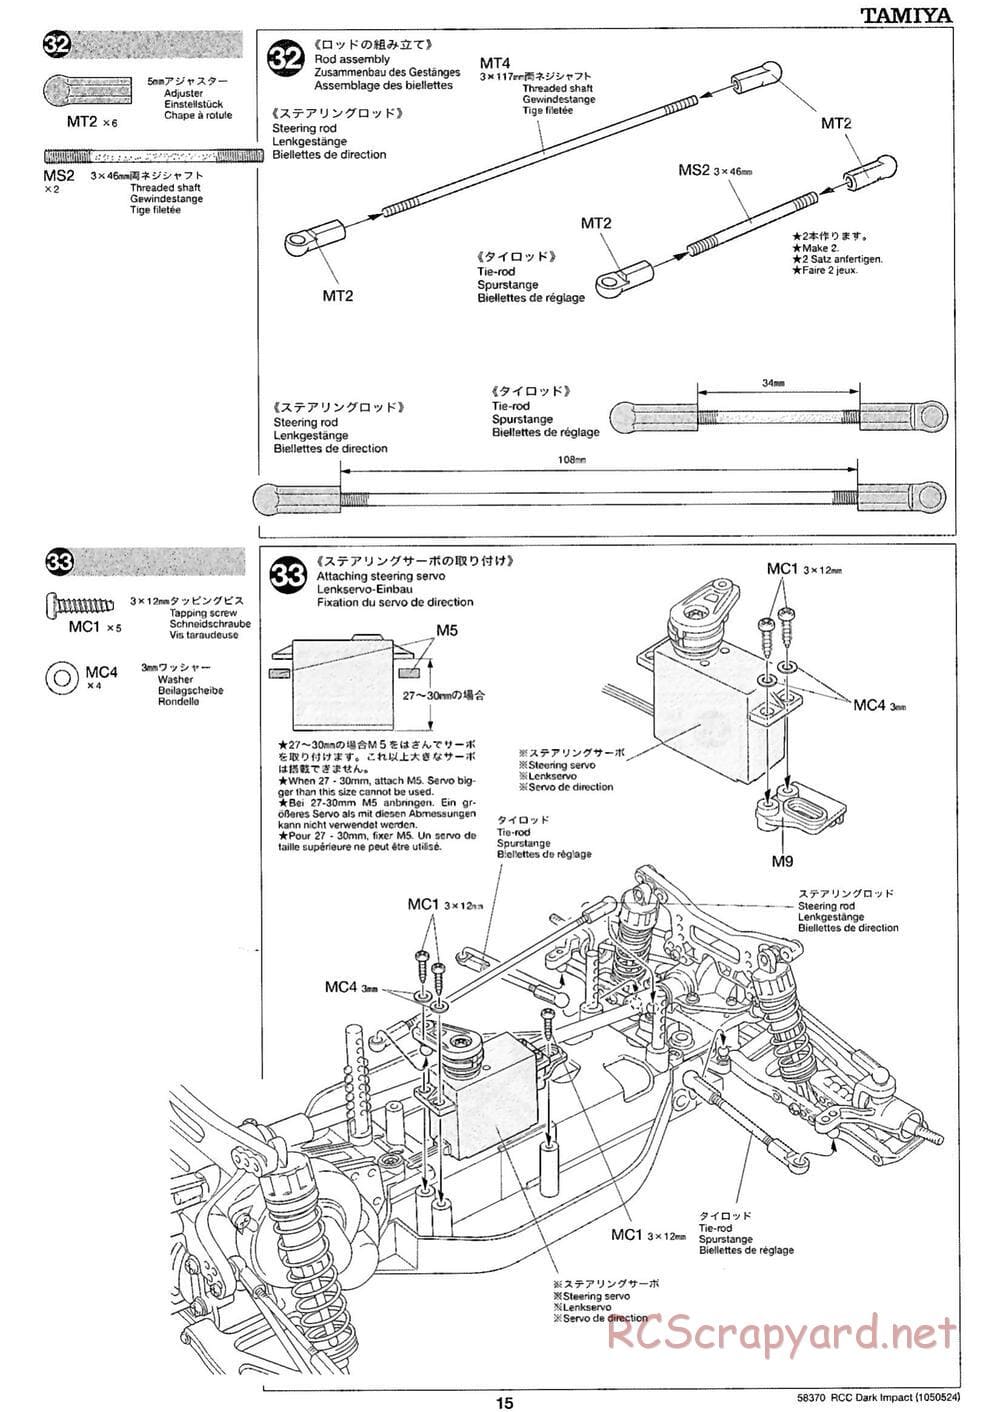 Tamiya - Dark Impact Chassis - Manual - Page 15